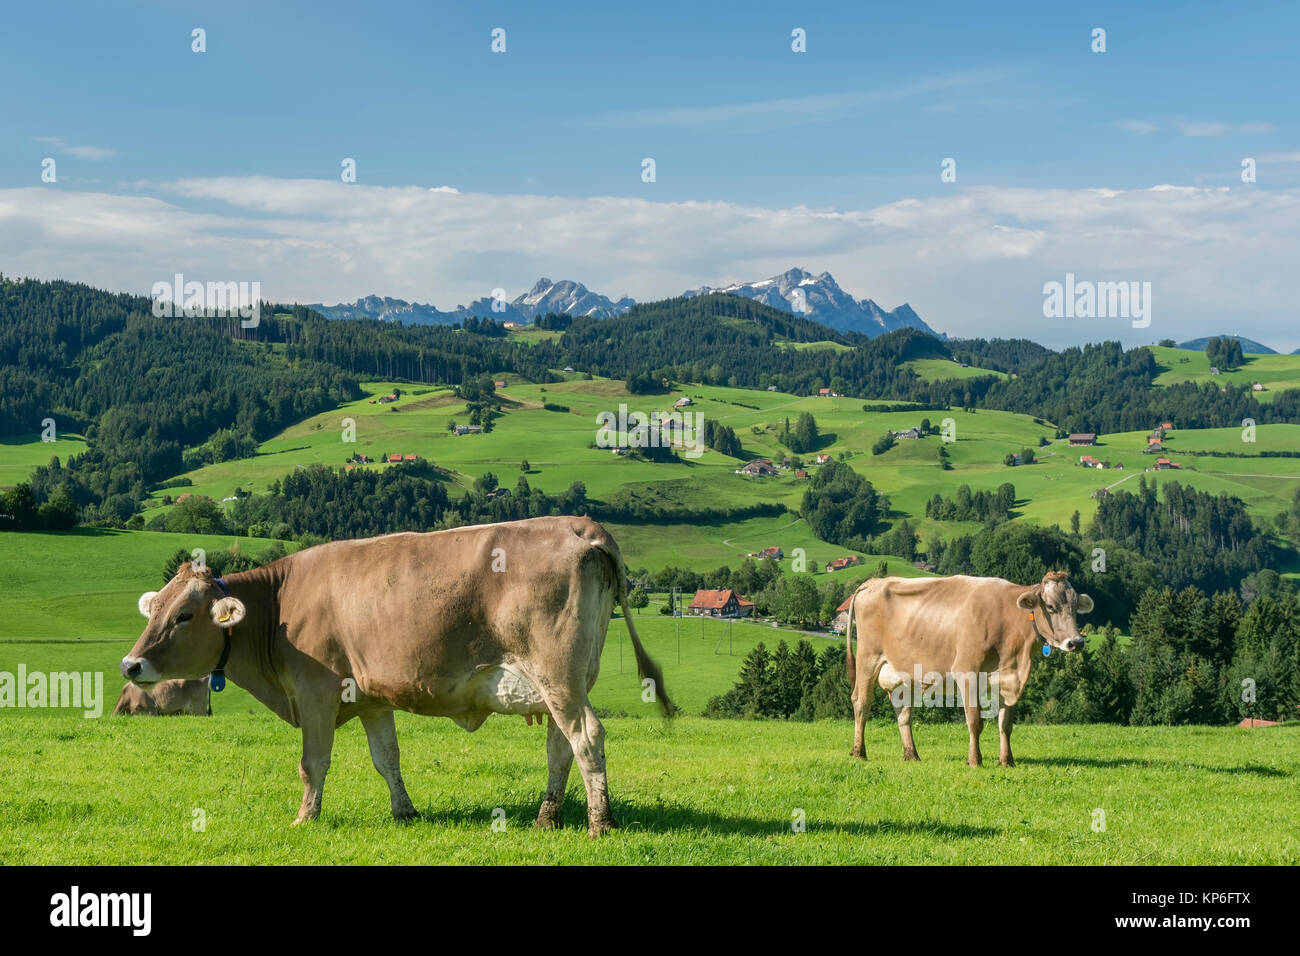 Kuehe auf der Weide, Schweiz - cows on field, Switzerland Stock Photo